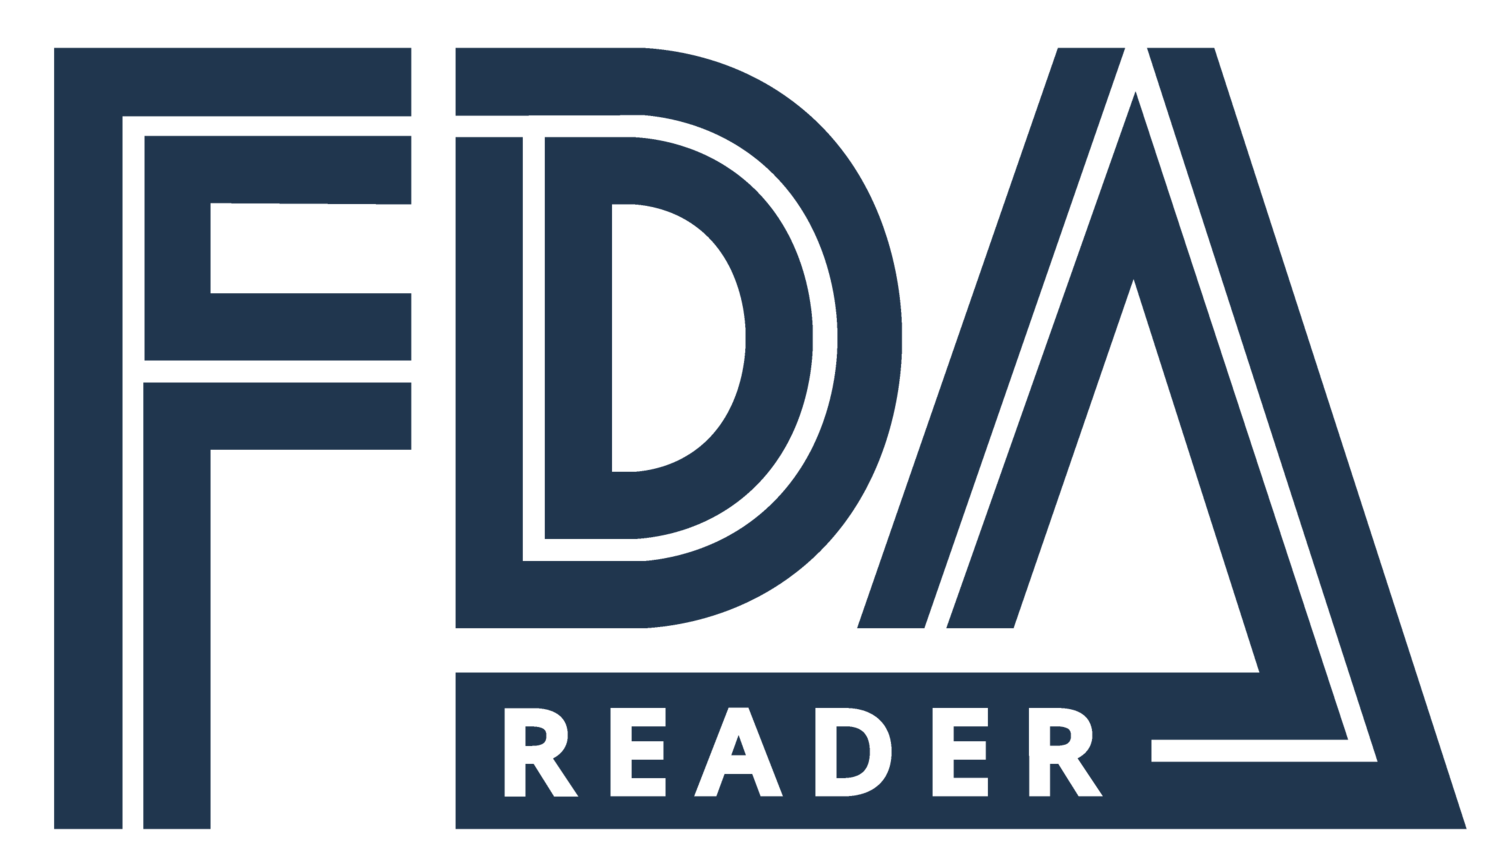 FDA Reader